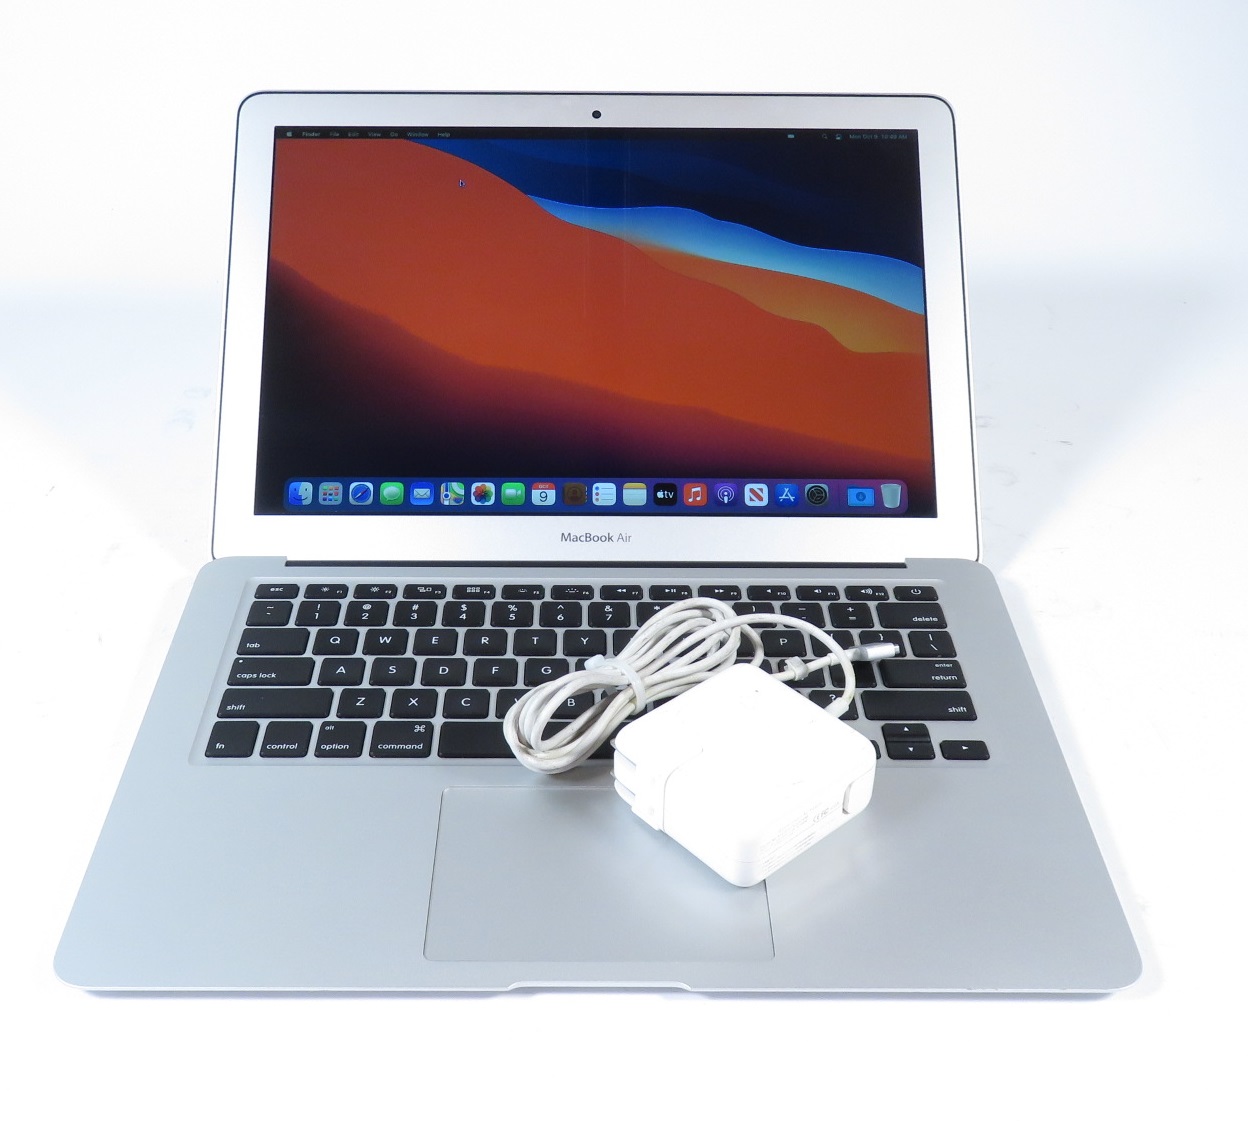 Apple MacBook Air 2013 MD760LL/A Core i5-4250U 1.3GHz 4GB RAM 128GB SSD  13.3